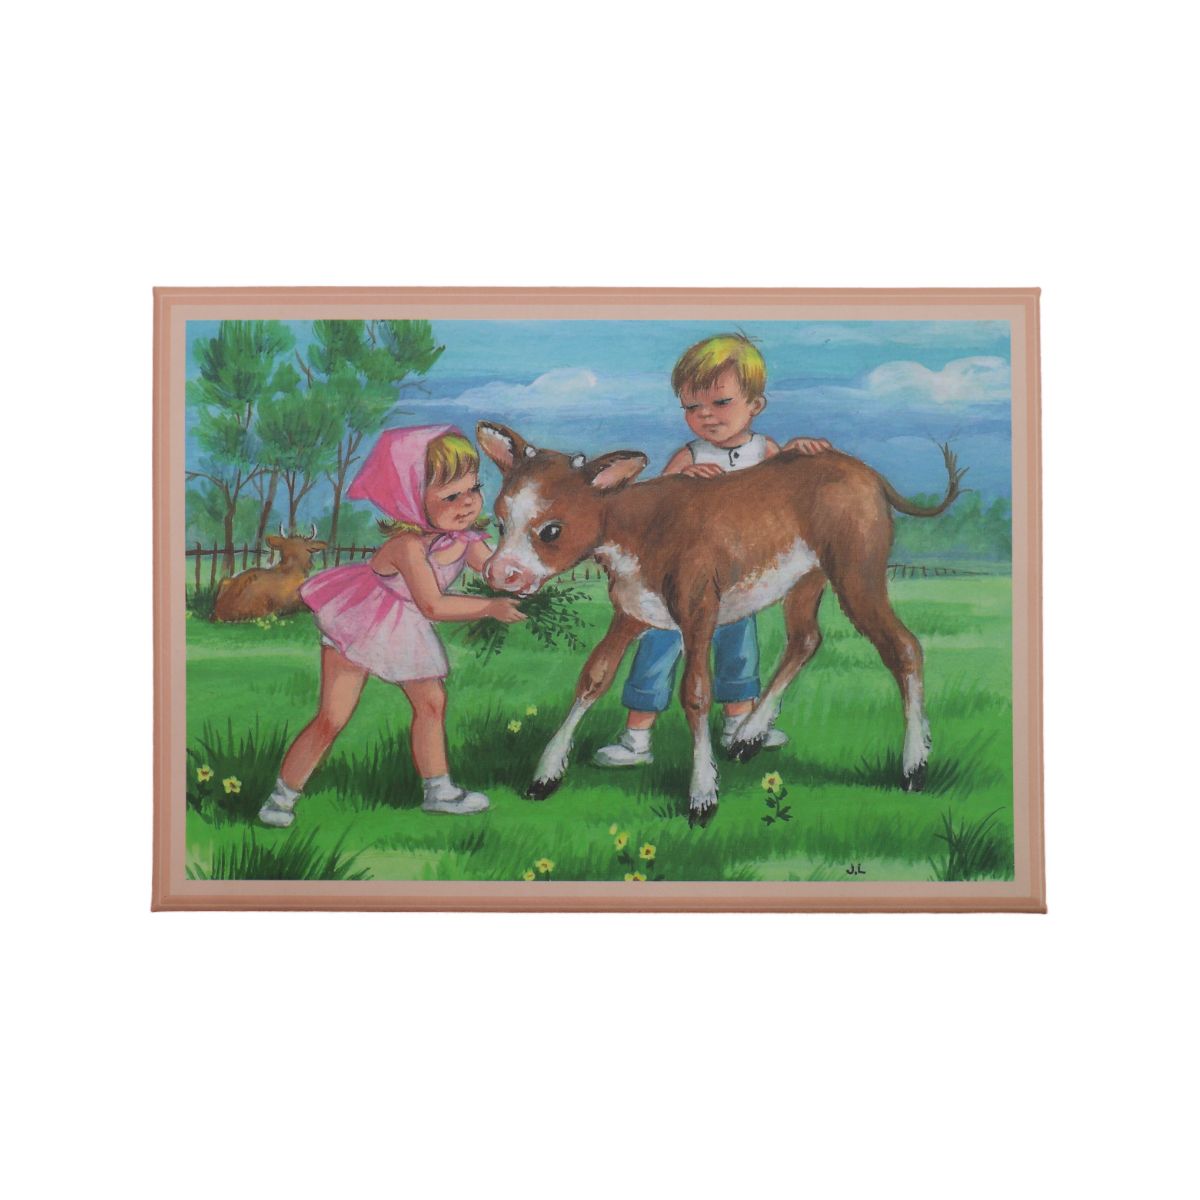 Caixa de Música Baú Meninos e Vaca Trousselier